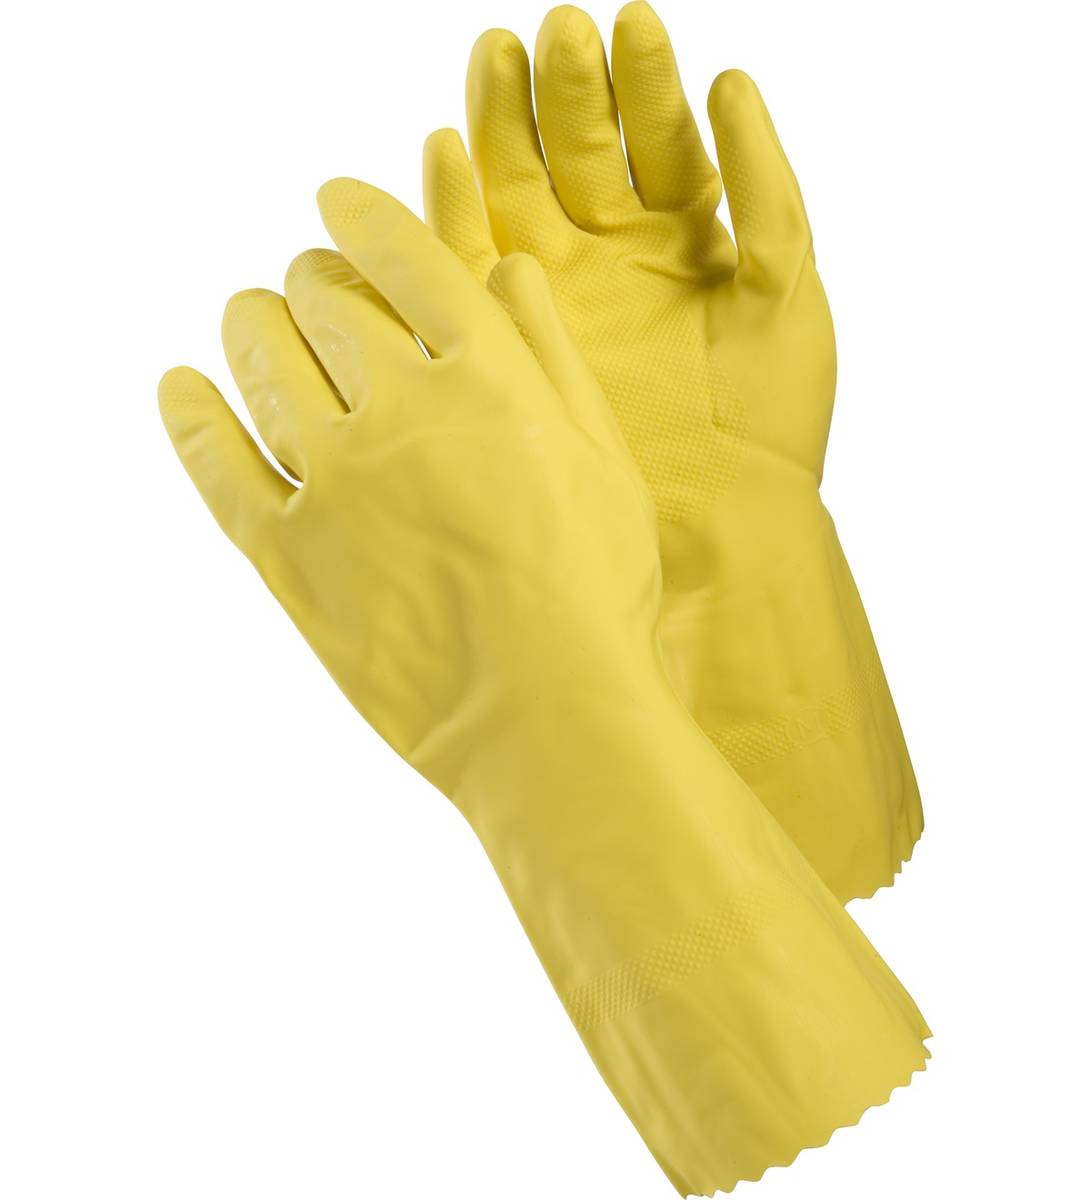 Aino household gloves M